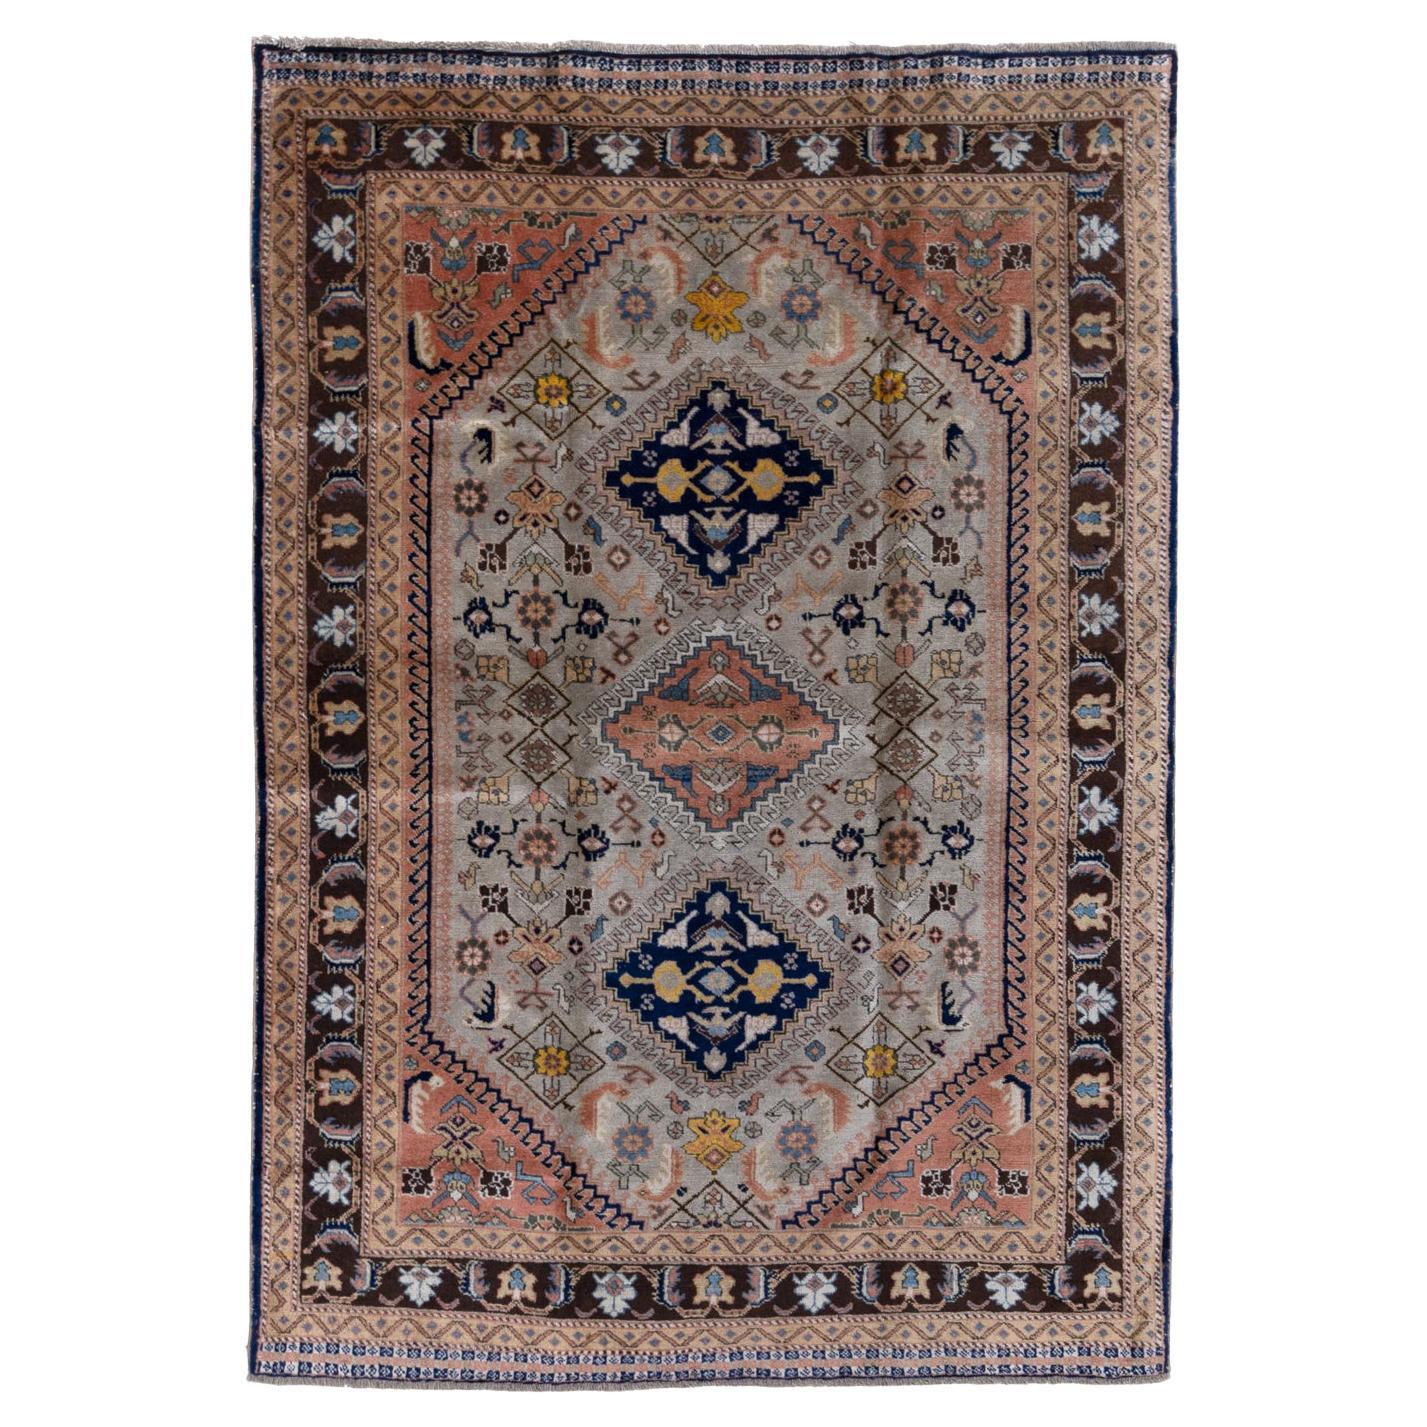 Persischer Teppich, Vintage